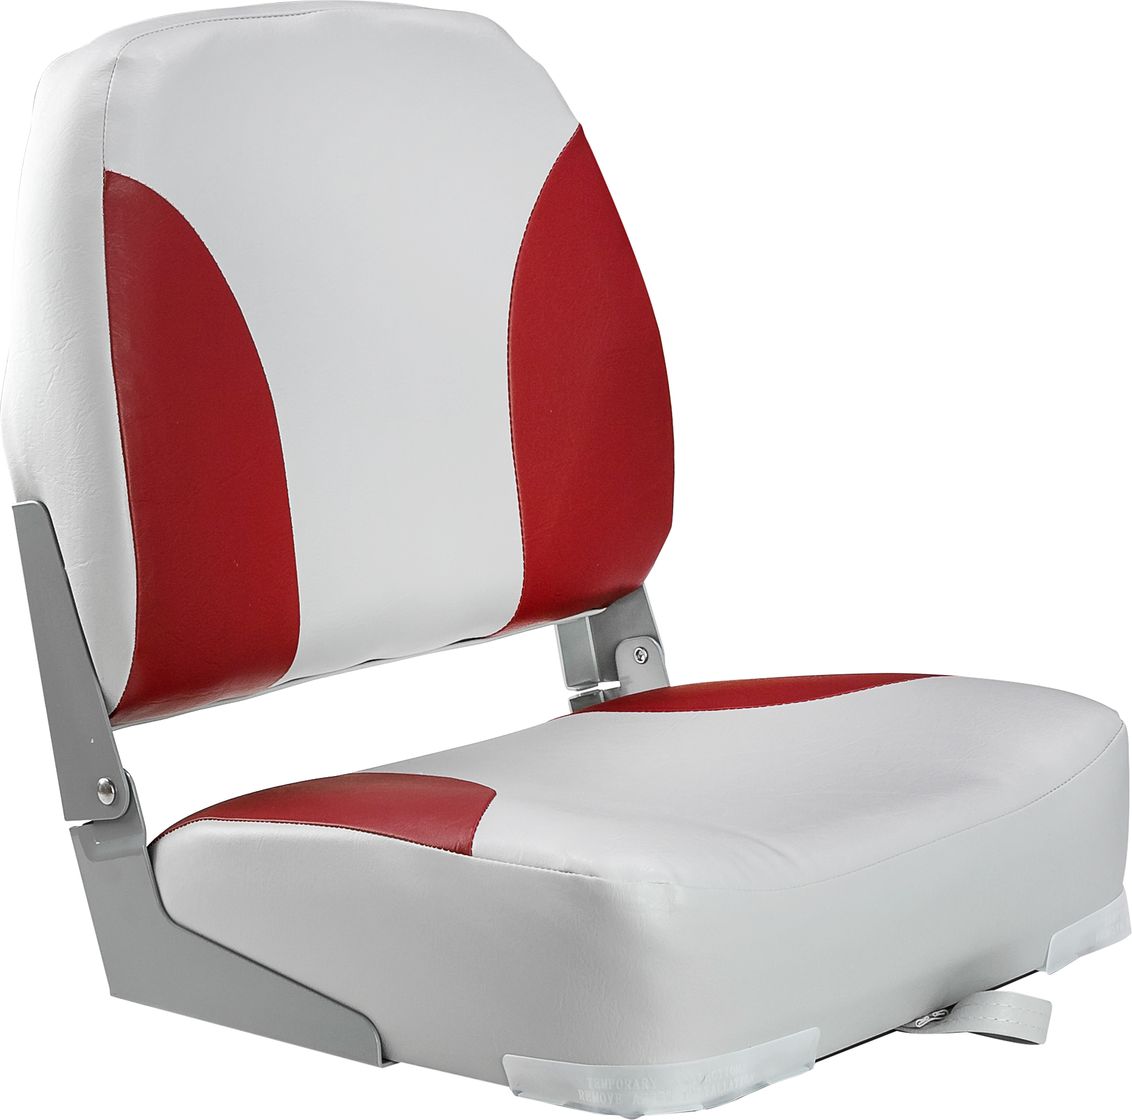 Кресло мягкое складное Classic, обивка винил, цвет серый/красный, Marine Rocket 75102GR-MR